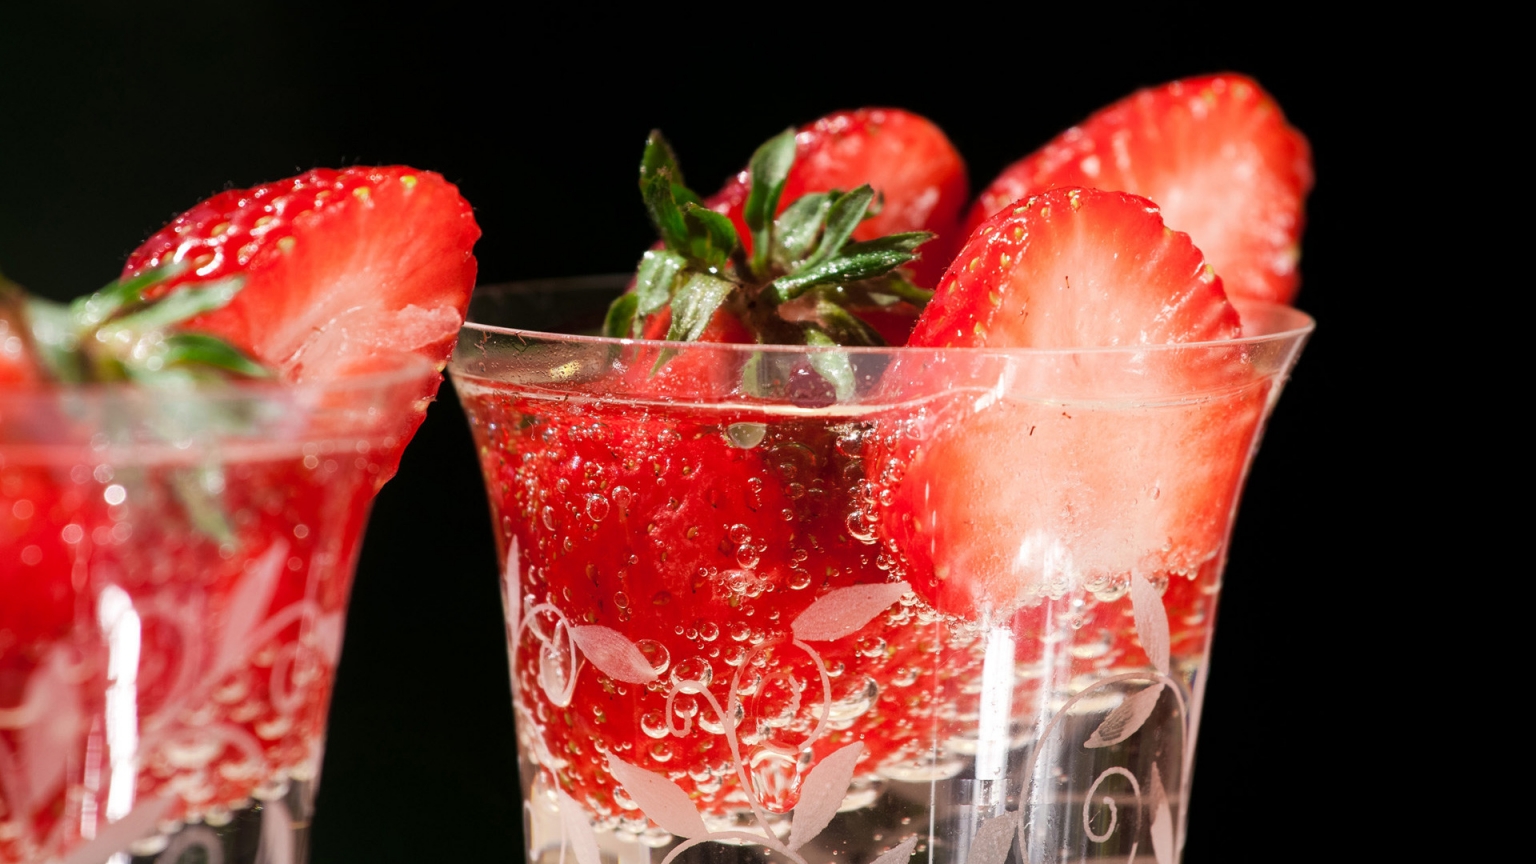 Fresh strawberries in glasses for 1536 x 864 HDTV resolution